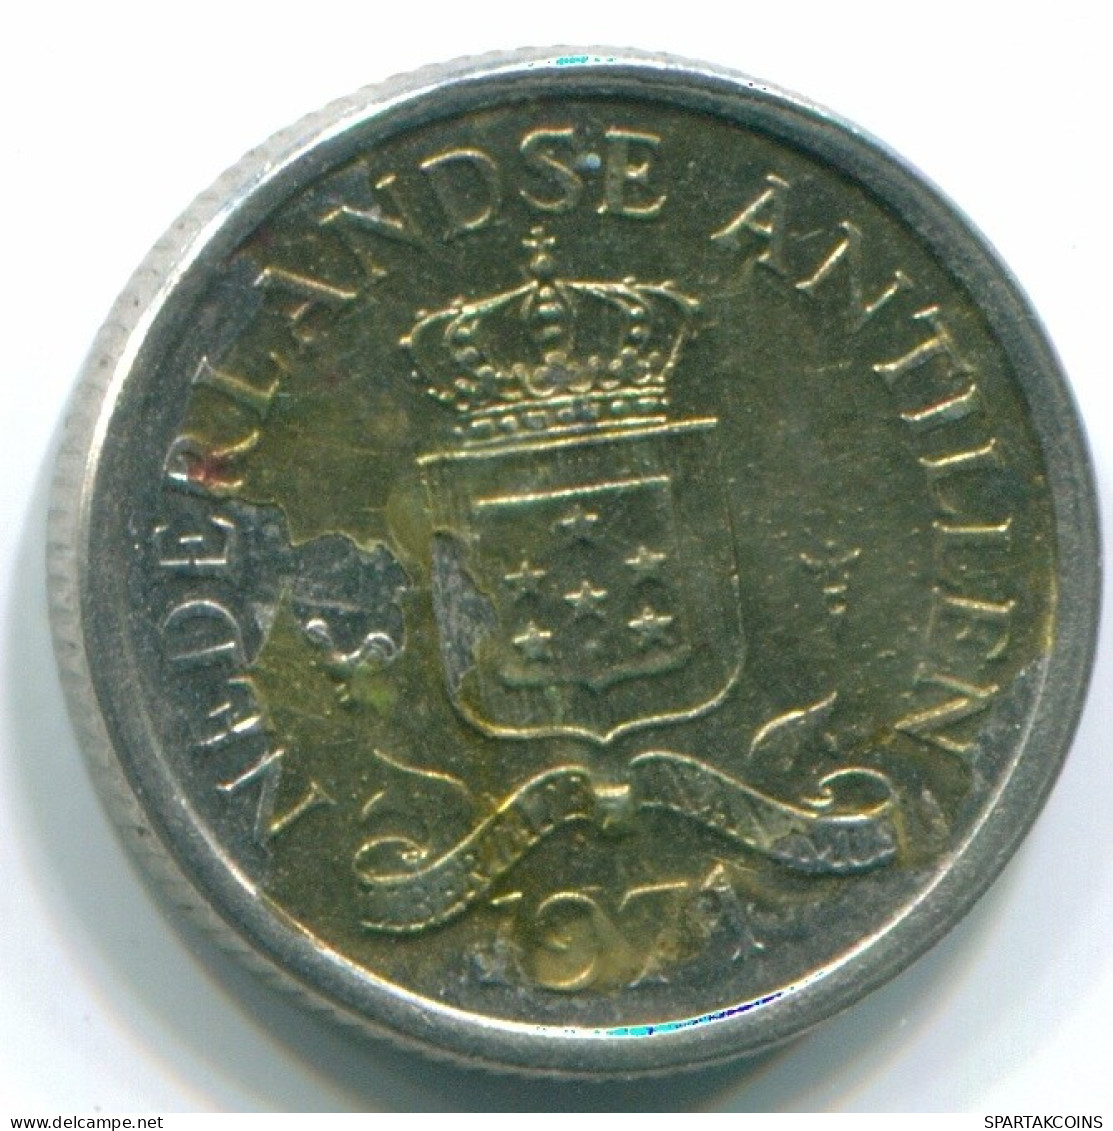 10 CENTS 1971 NIEDERLÄNDISCHE ANTILLEN Nickel Koloniale Münze #S13457.D.A - Antille Olandesi